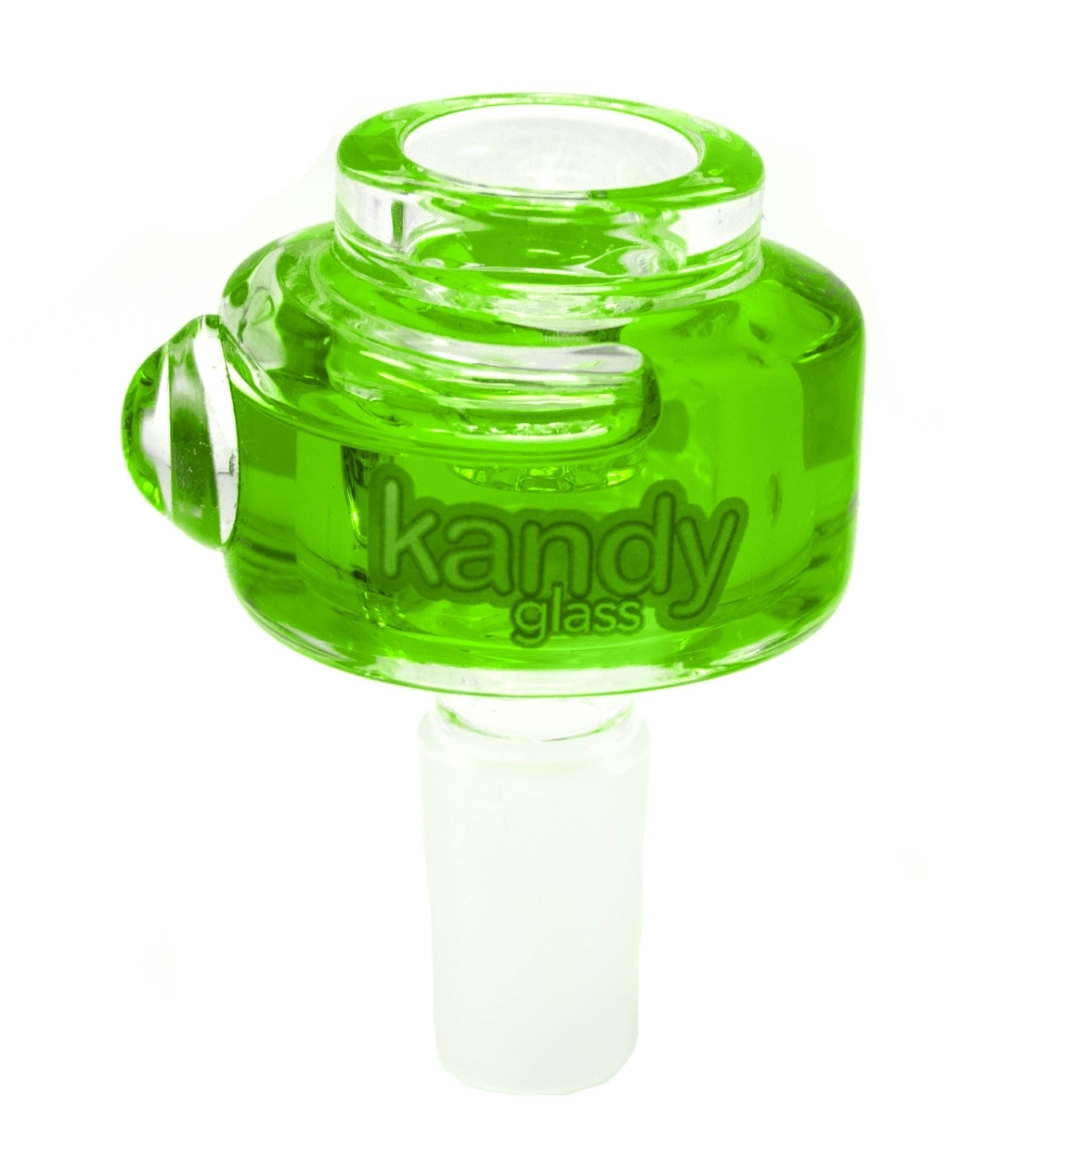 Kandy Bowl Glass Freeze W/glycerine 14mm Male